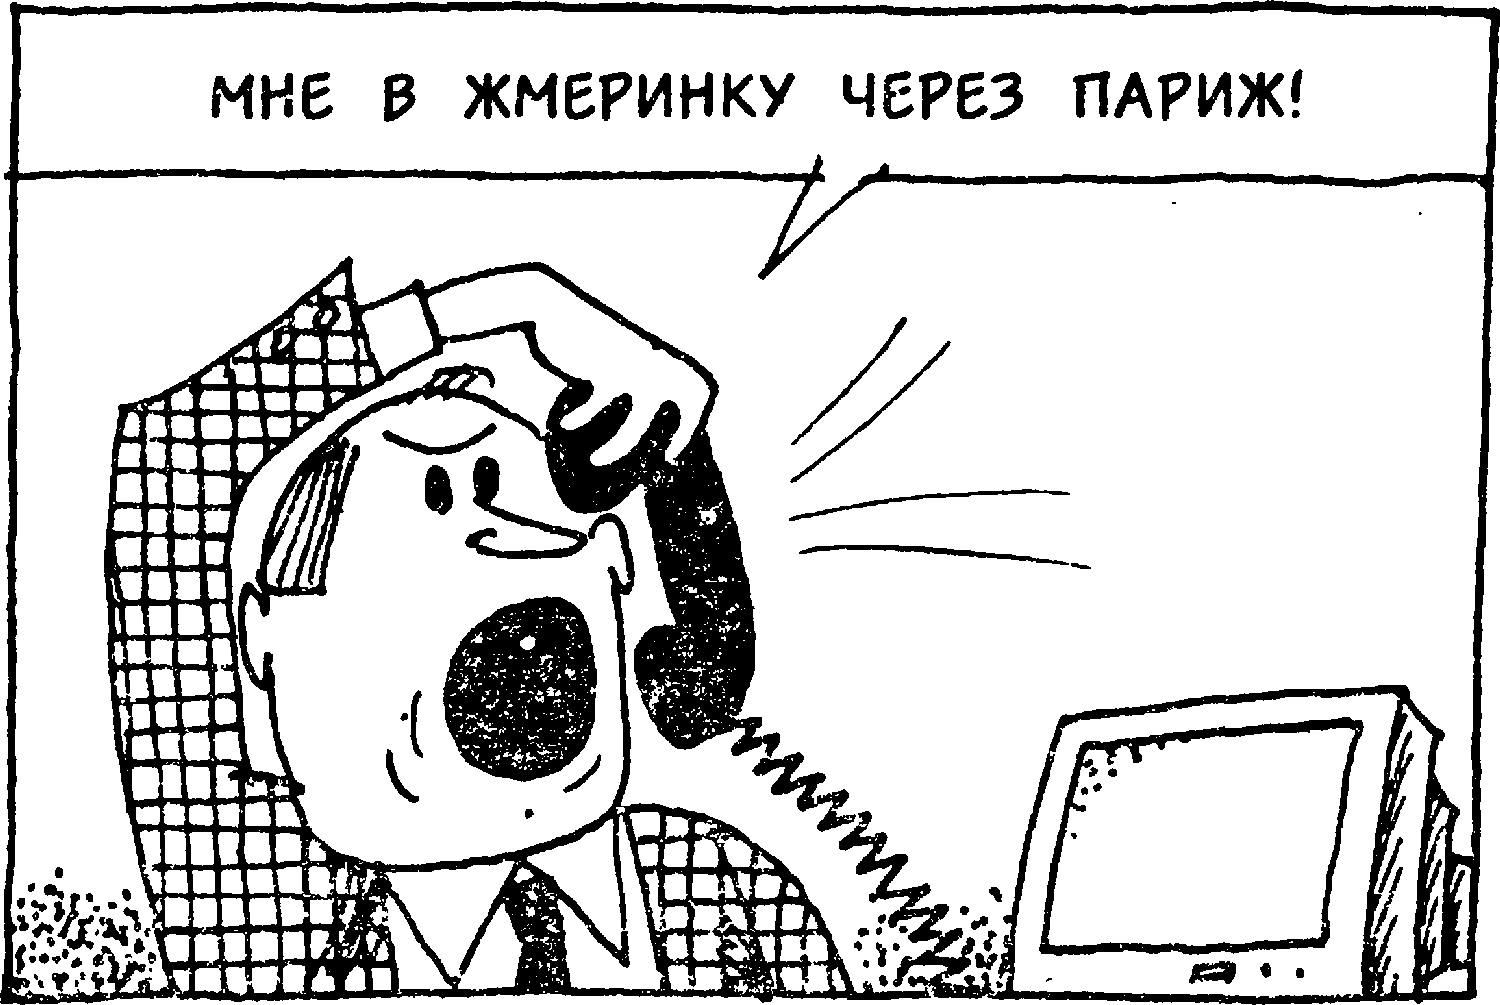 Я познаю мир. Компьютеры и интернет. Станислав Николаевич Зигуненко. Иллюстрация 23